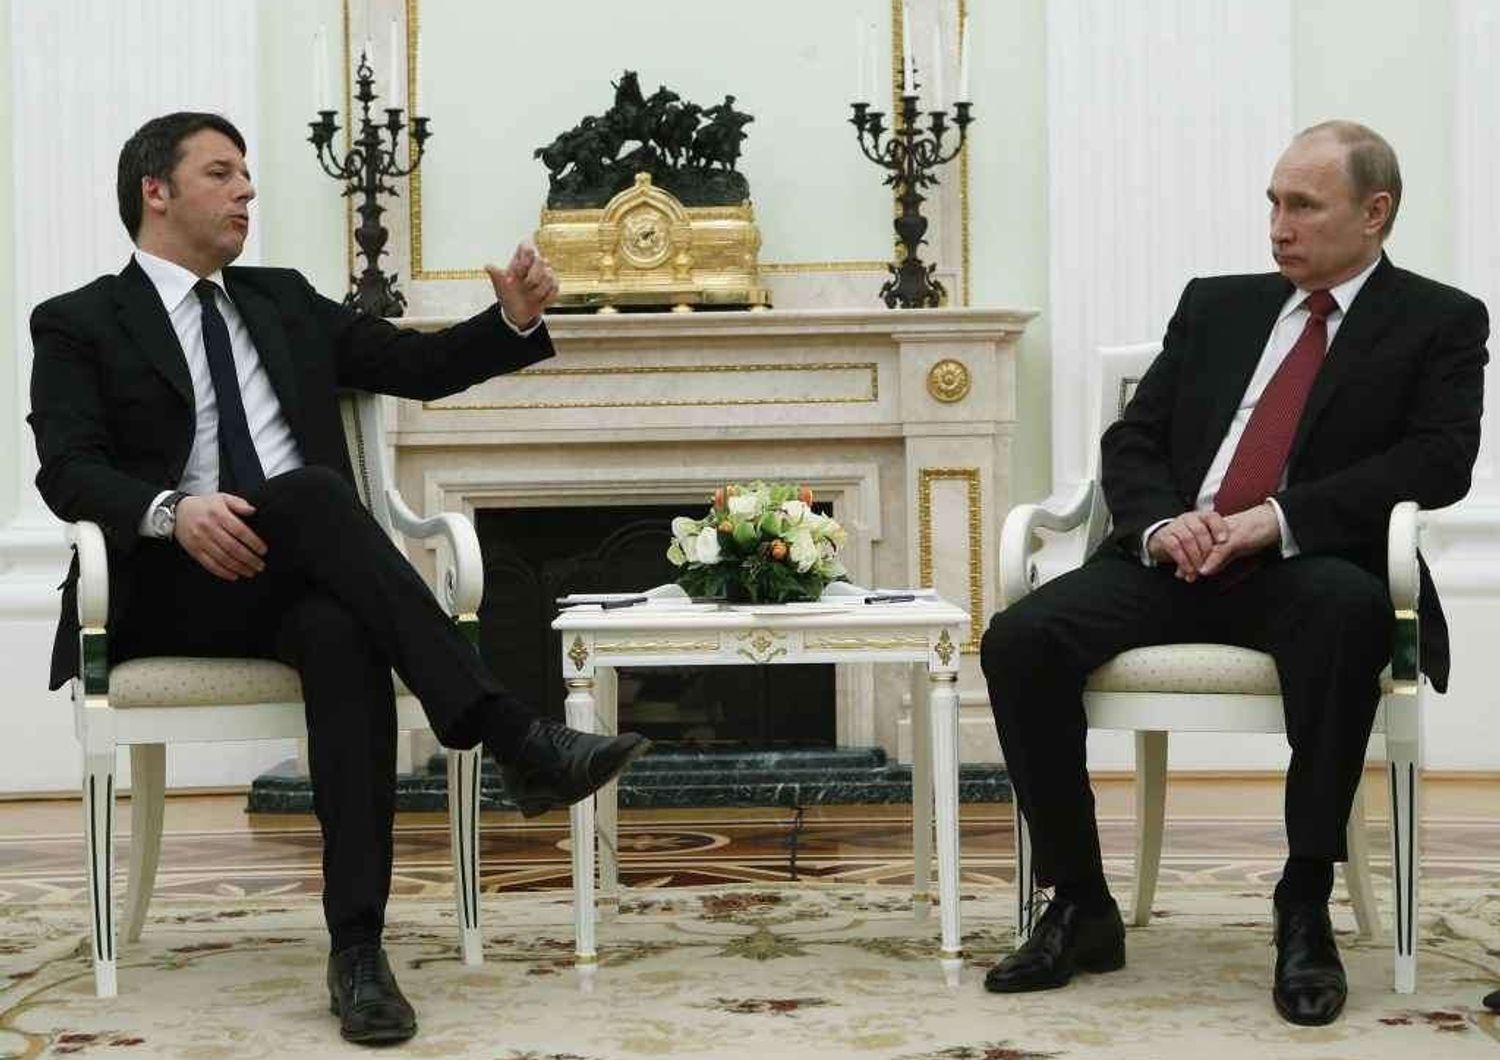 Putin, "In Libia con l'Onu". Renzi, "Con Mosca contro terrorismo"